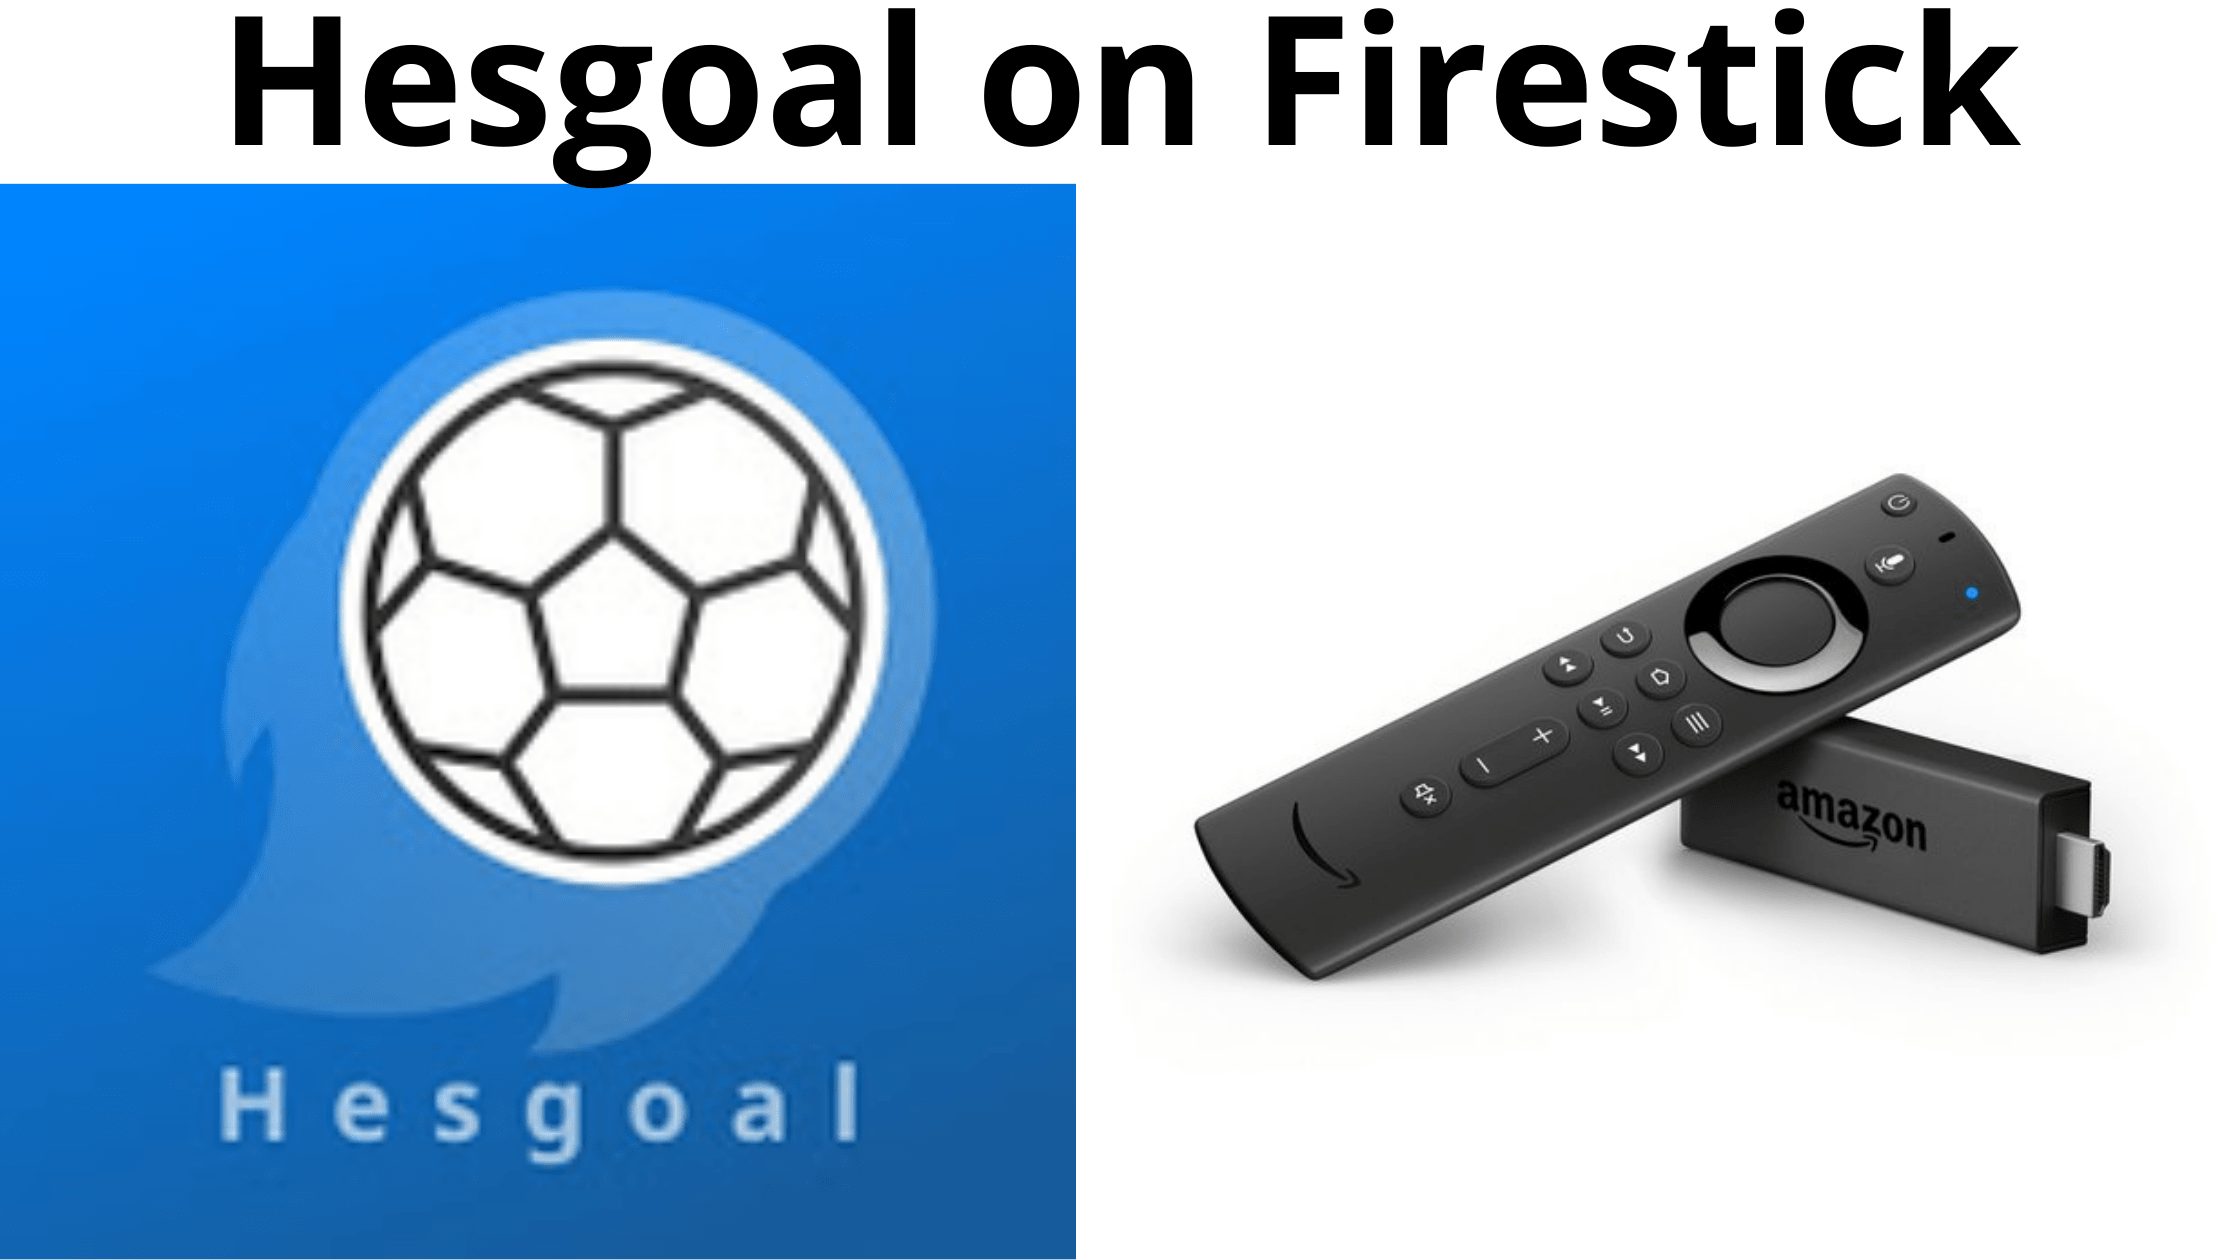 Hesgoal on Firestick